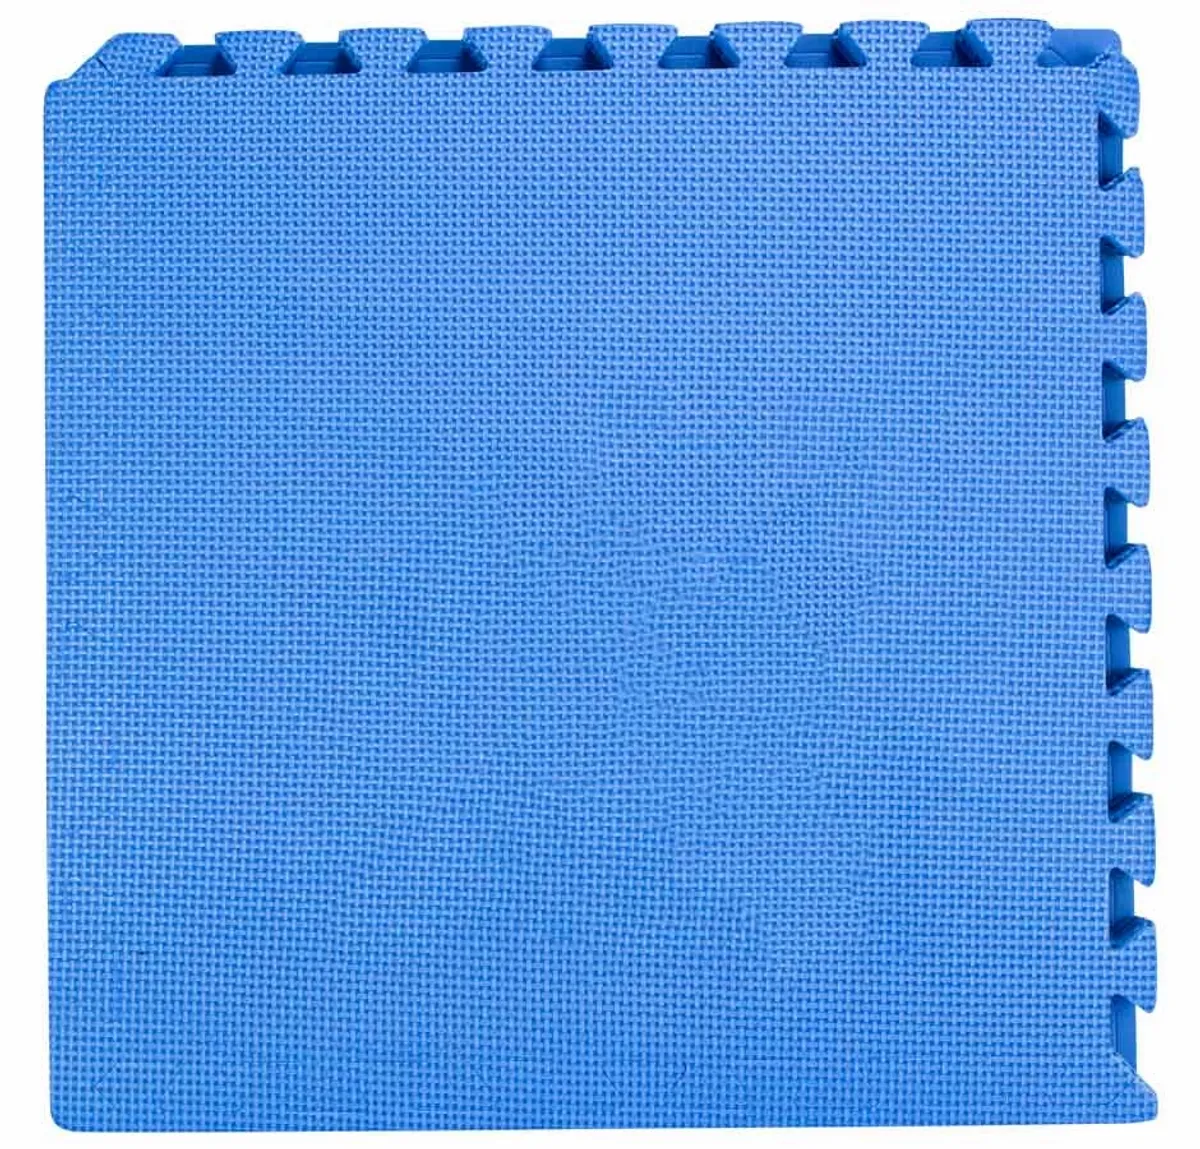 Thick pool sub-tiles blue - 8 pieces of 50 x 50 x 1 cm - W'eau